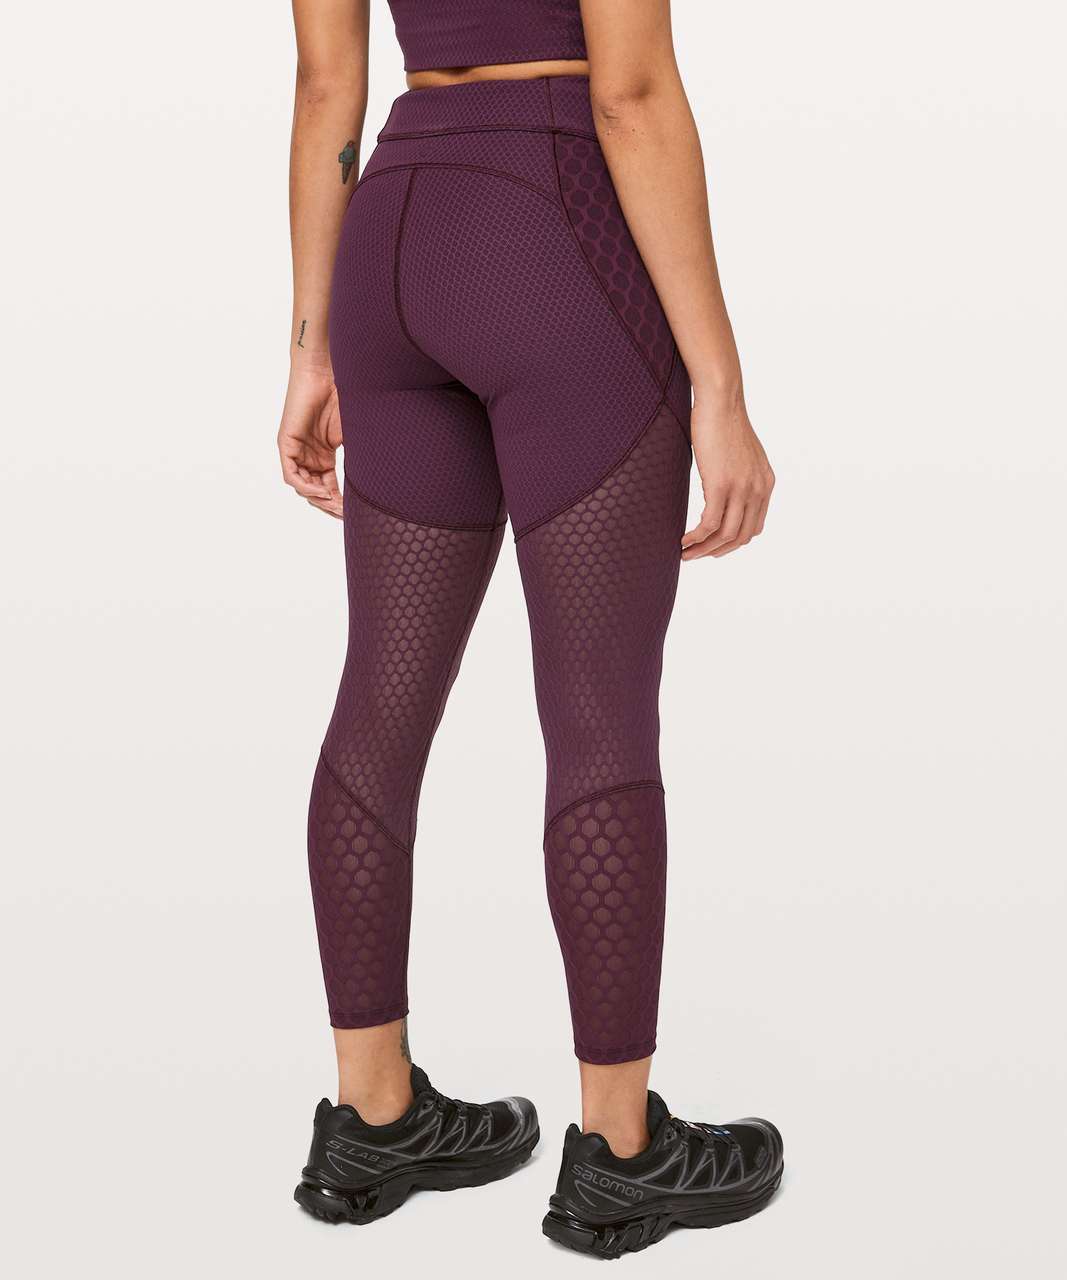 lululemon purple mesh leggings